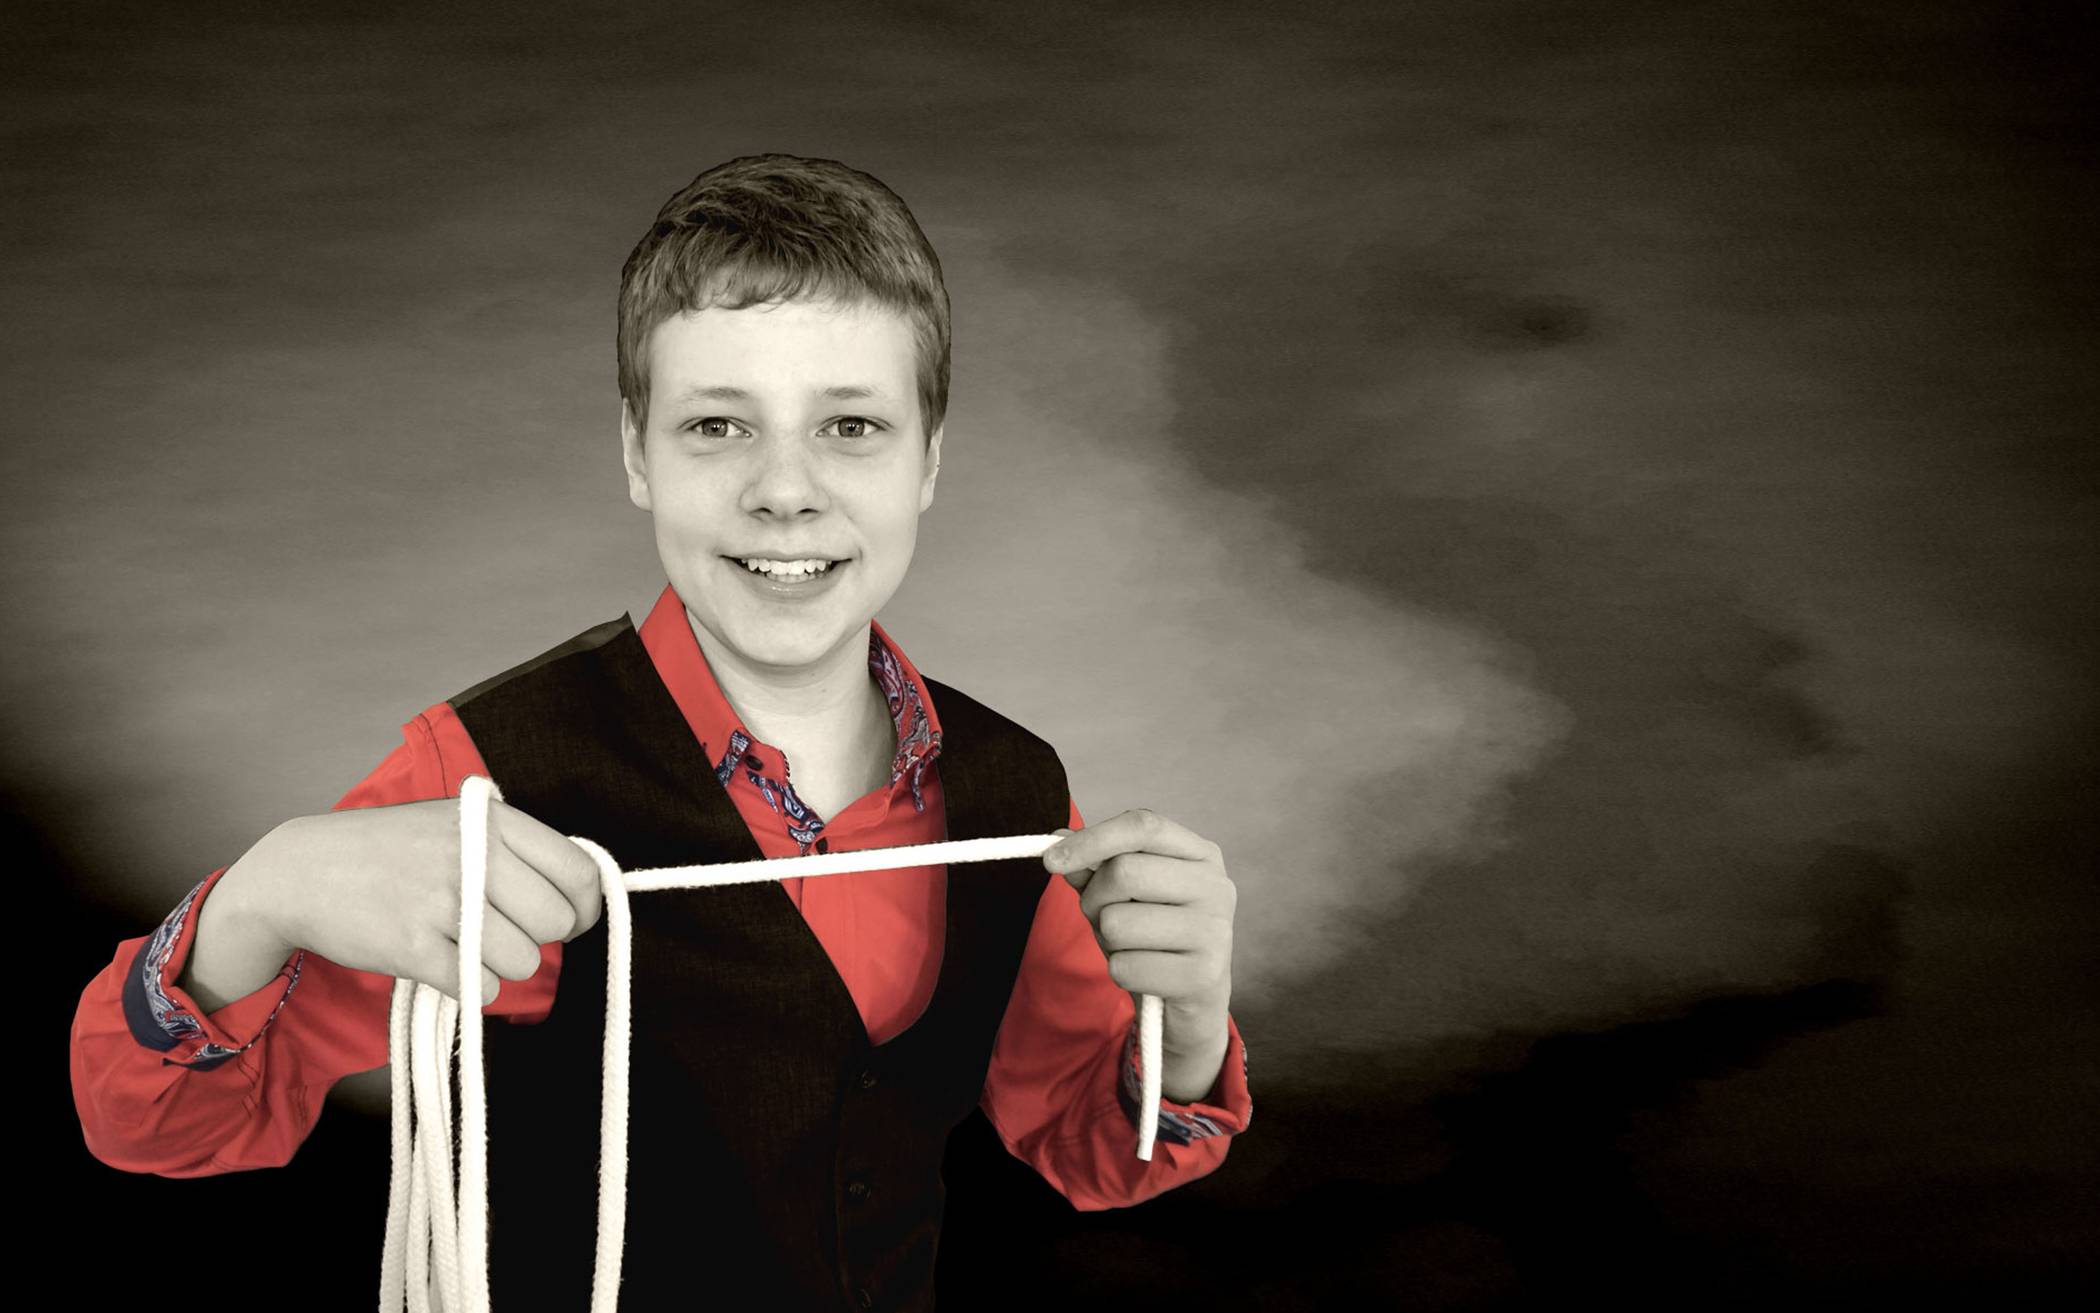  Connor Schlüter (16) bekam im Alter von fünf Jahren den ersten Zauberkasten von seinen Eltern geschenkt. 